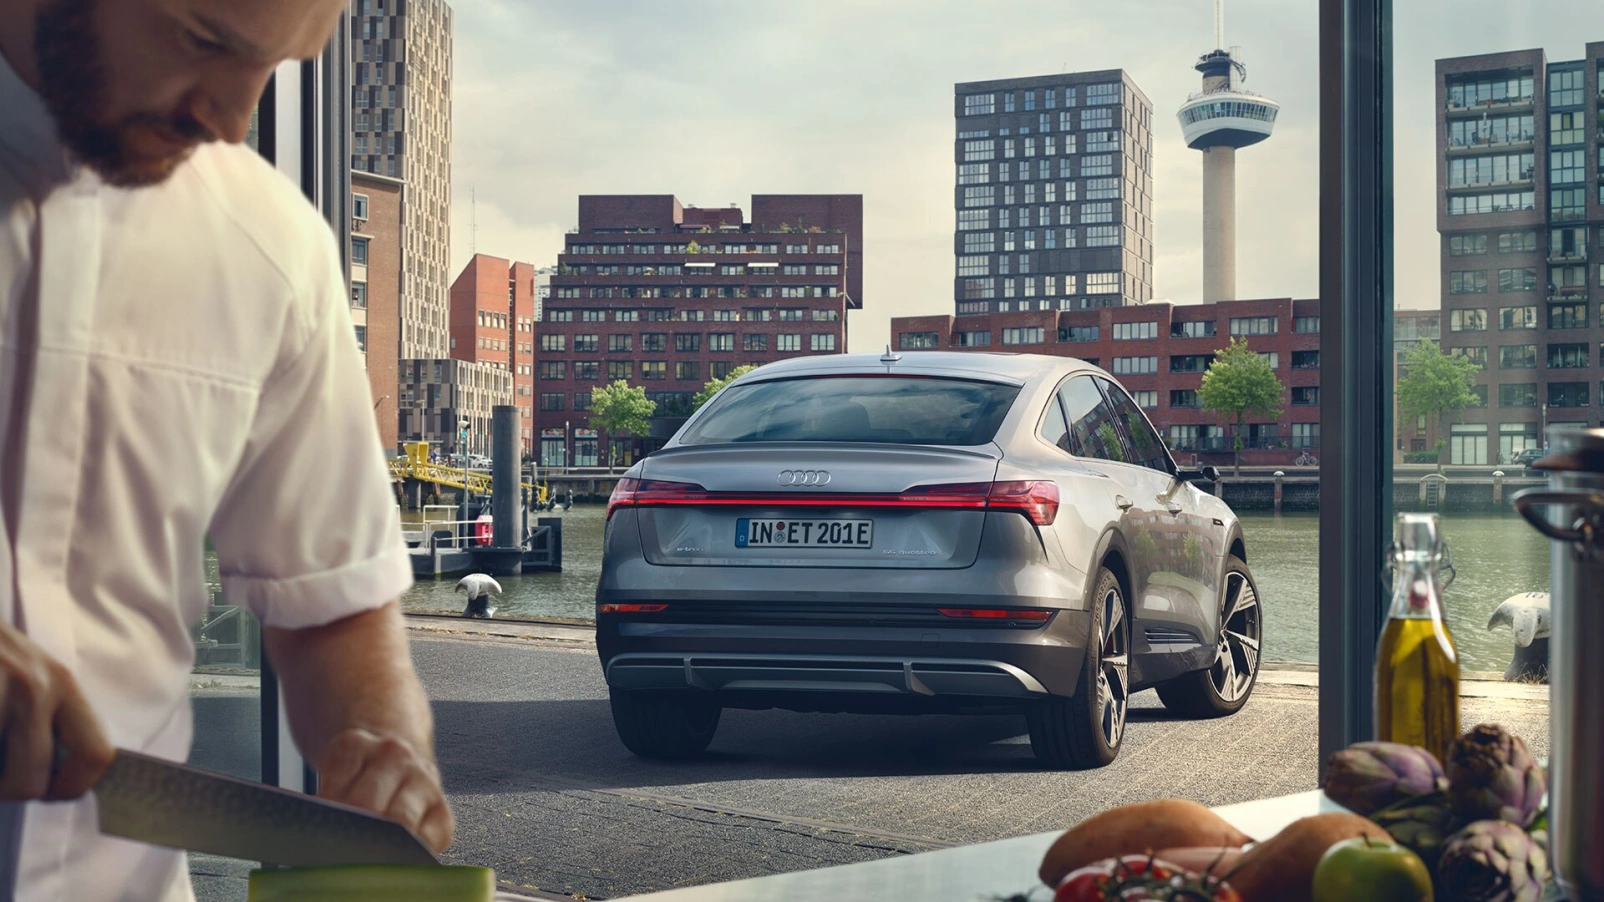 De nieuwe Audi e-tron Sportback is zowel sportief als elegant. Onderaan de portieren is visueel inzichtelijk gemaakt waar het accupakket is te vinden. Bovendien maakt dit vormgevingselement de auto optisch lager